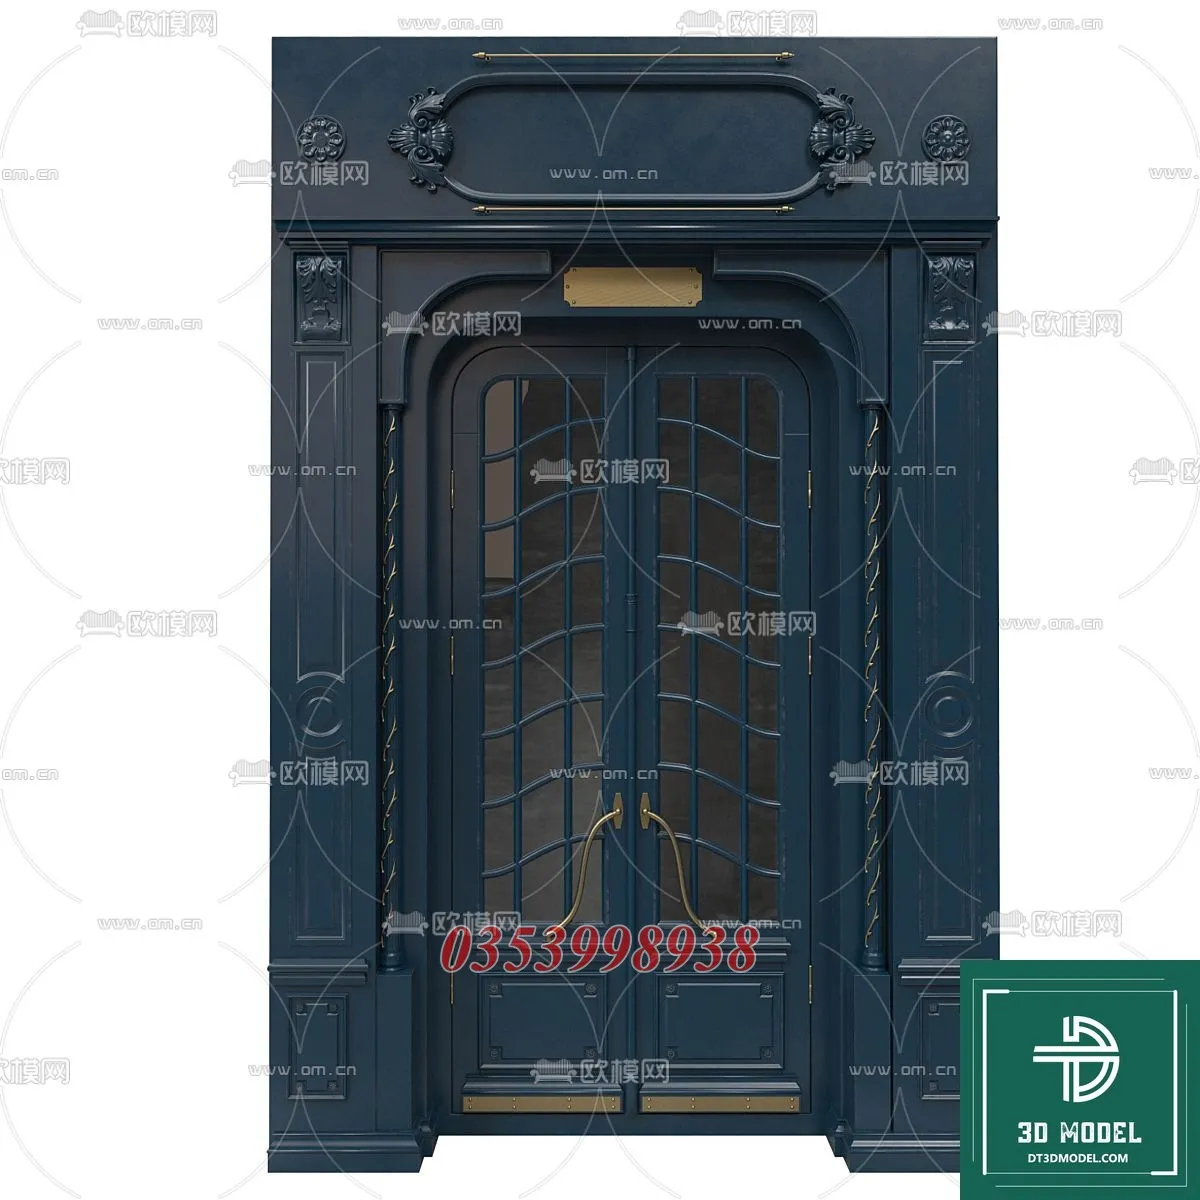 CLASSIC DOOR – 3dsmax MODELS – 117